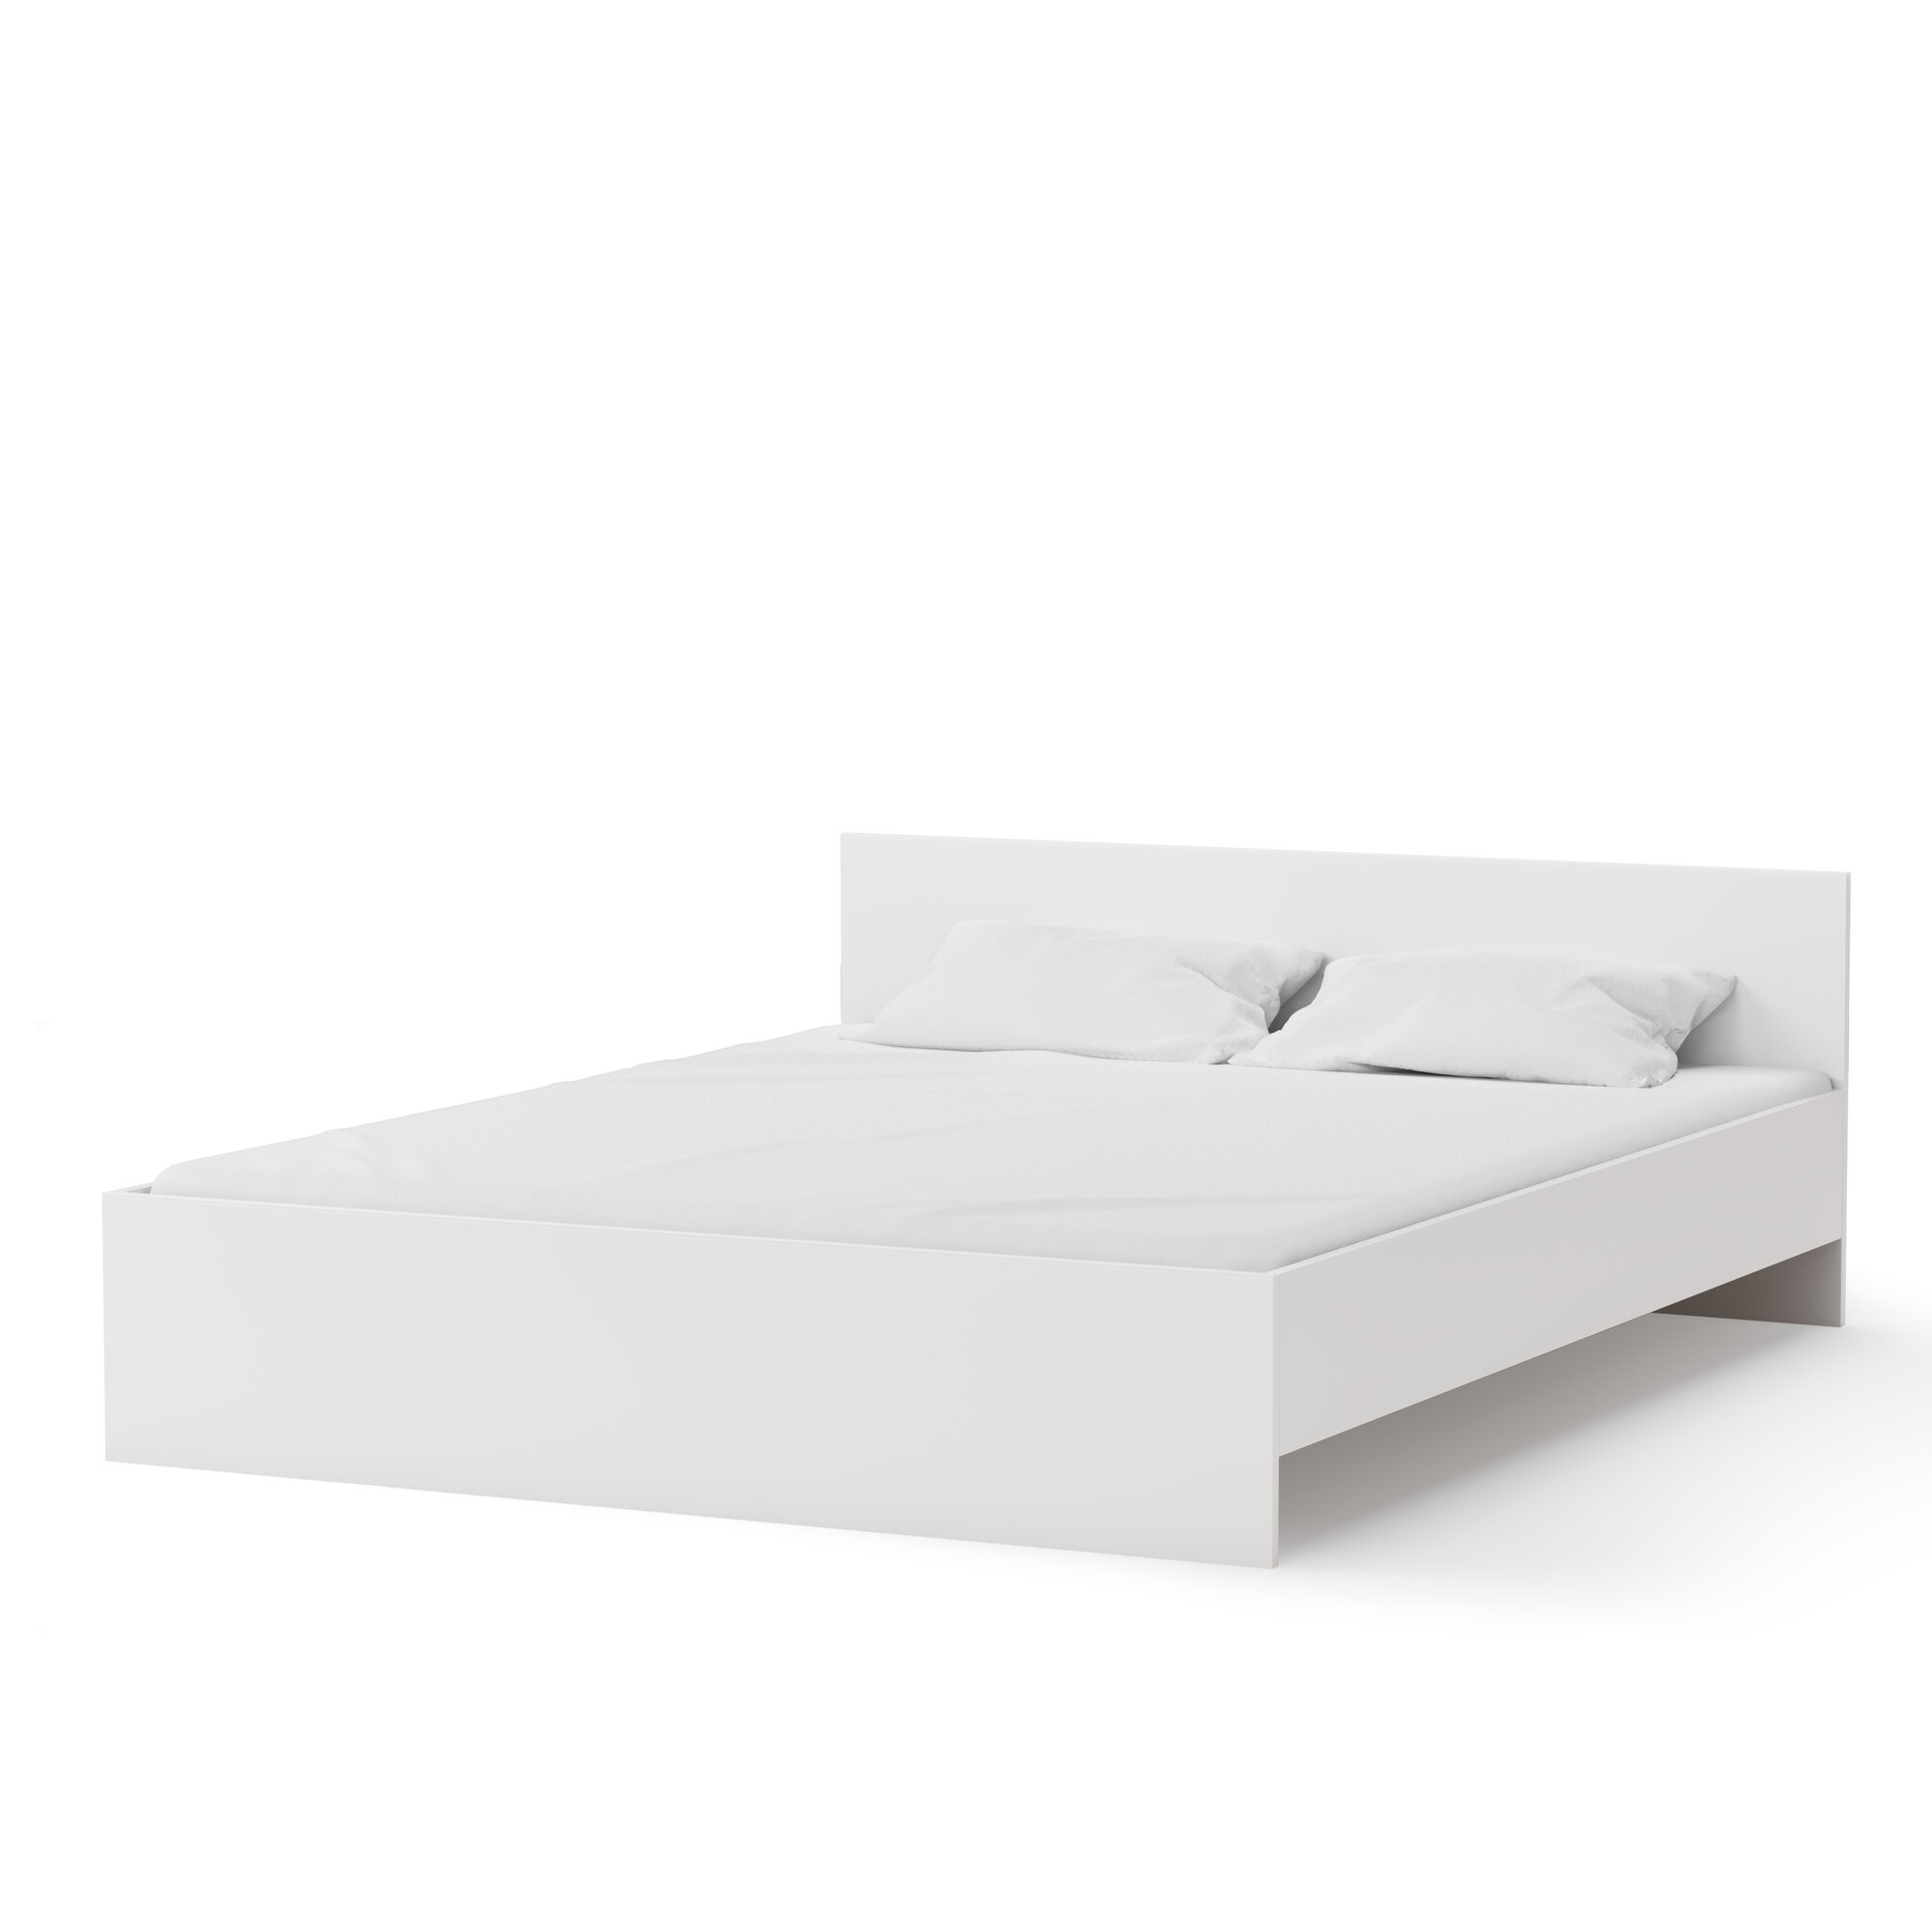 Каркас кровати Pragma Tevi с реечным основанием, спальное место 160х200 см, размеры 166х206 см, ЛДСП, белый